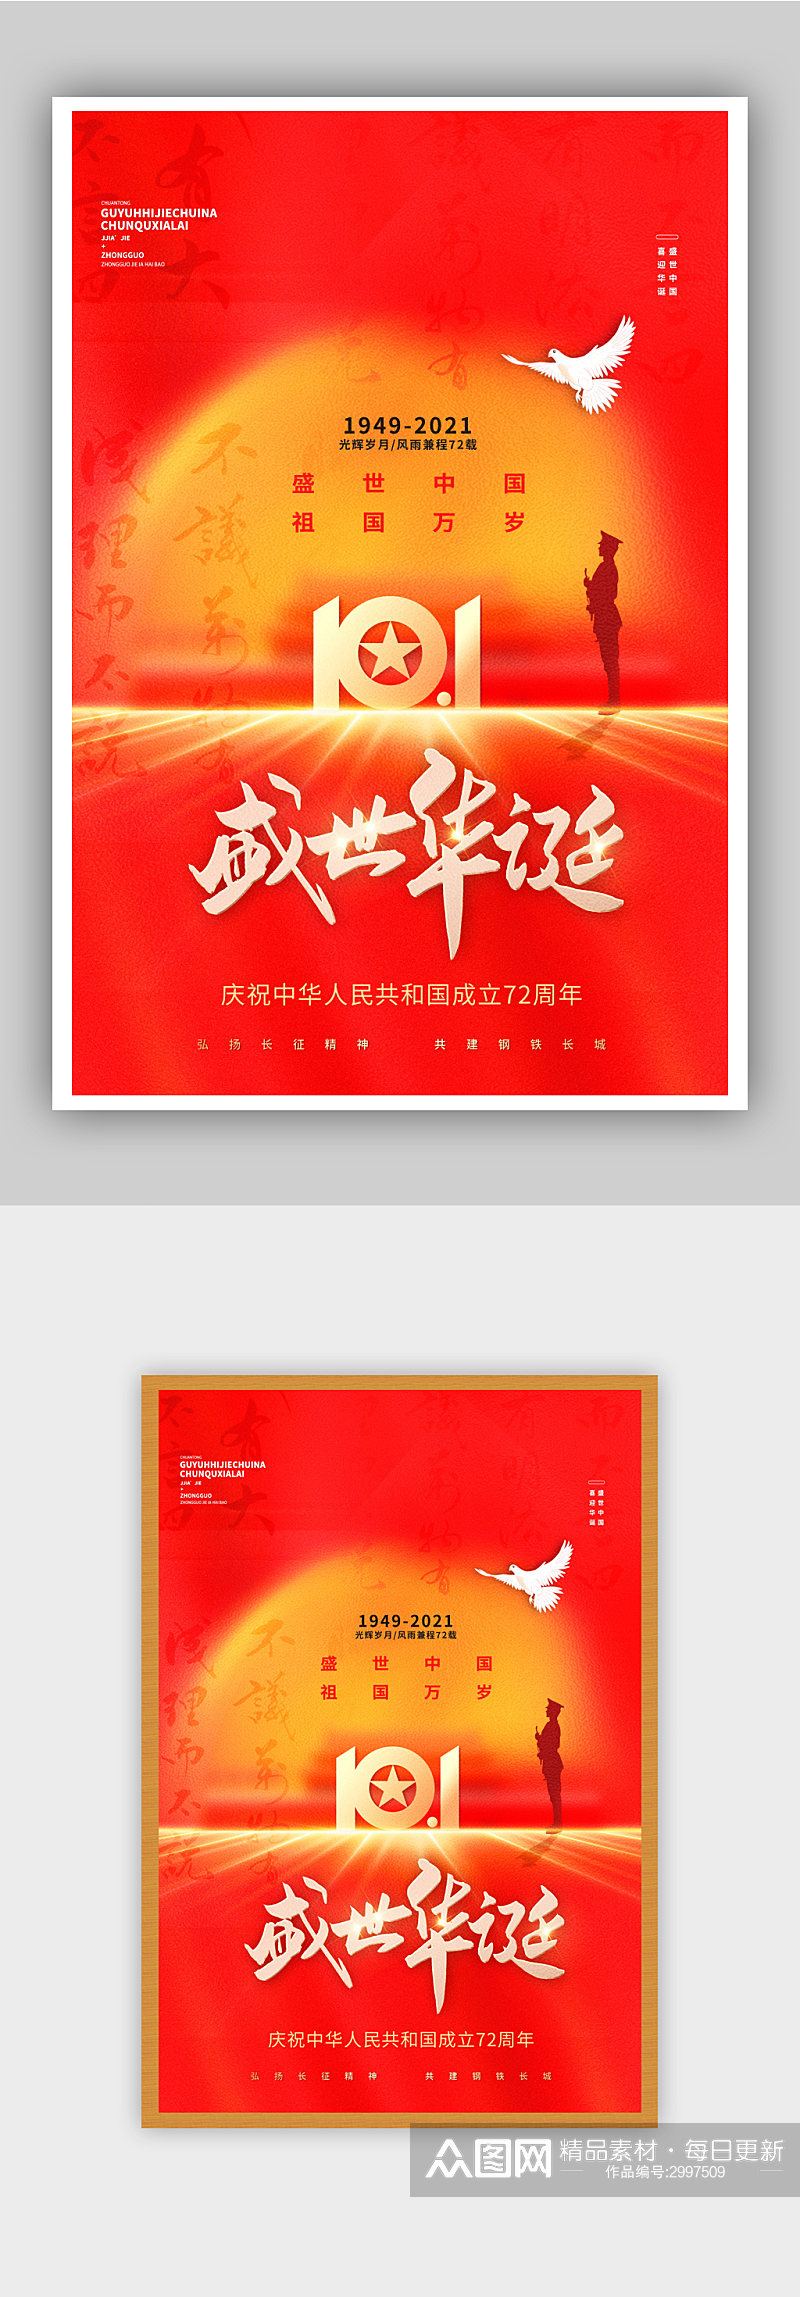 红色大气国庆节创意海报素材